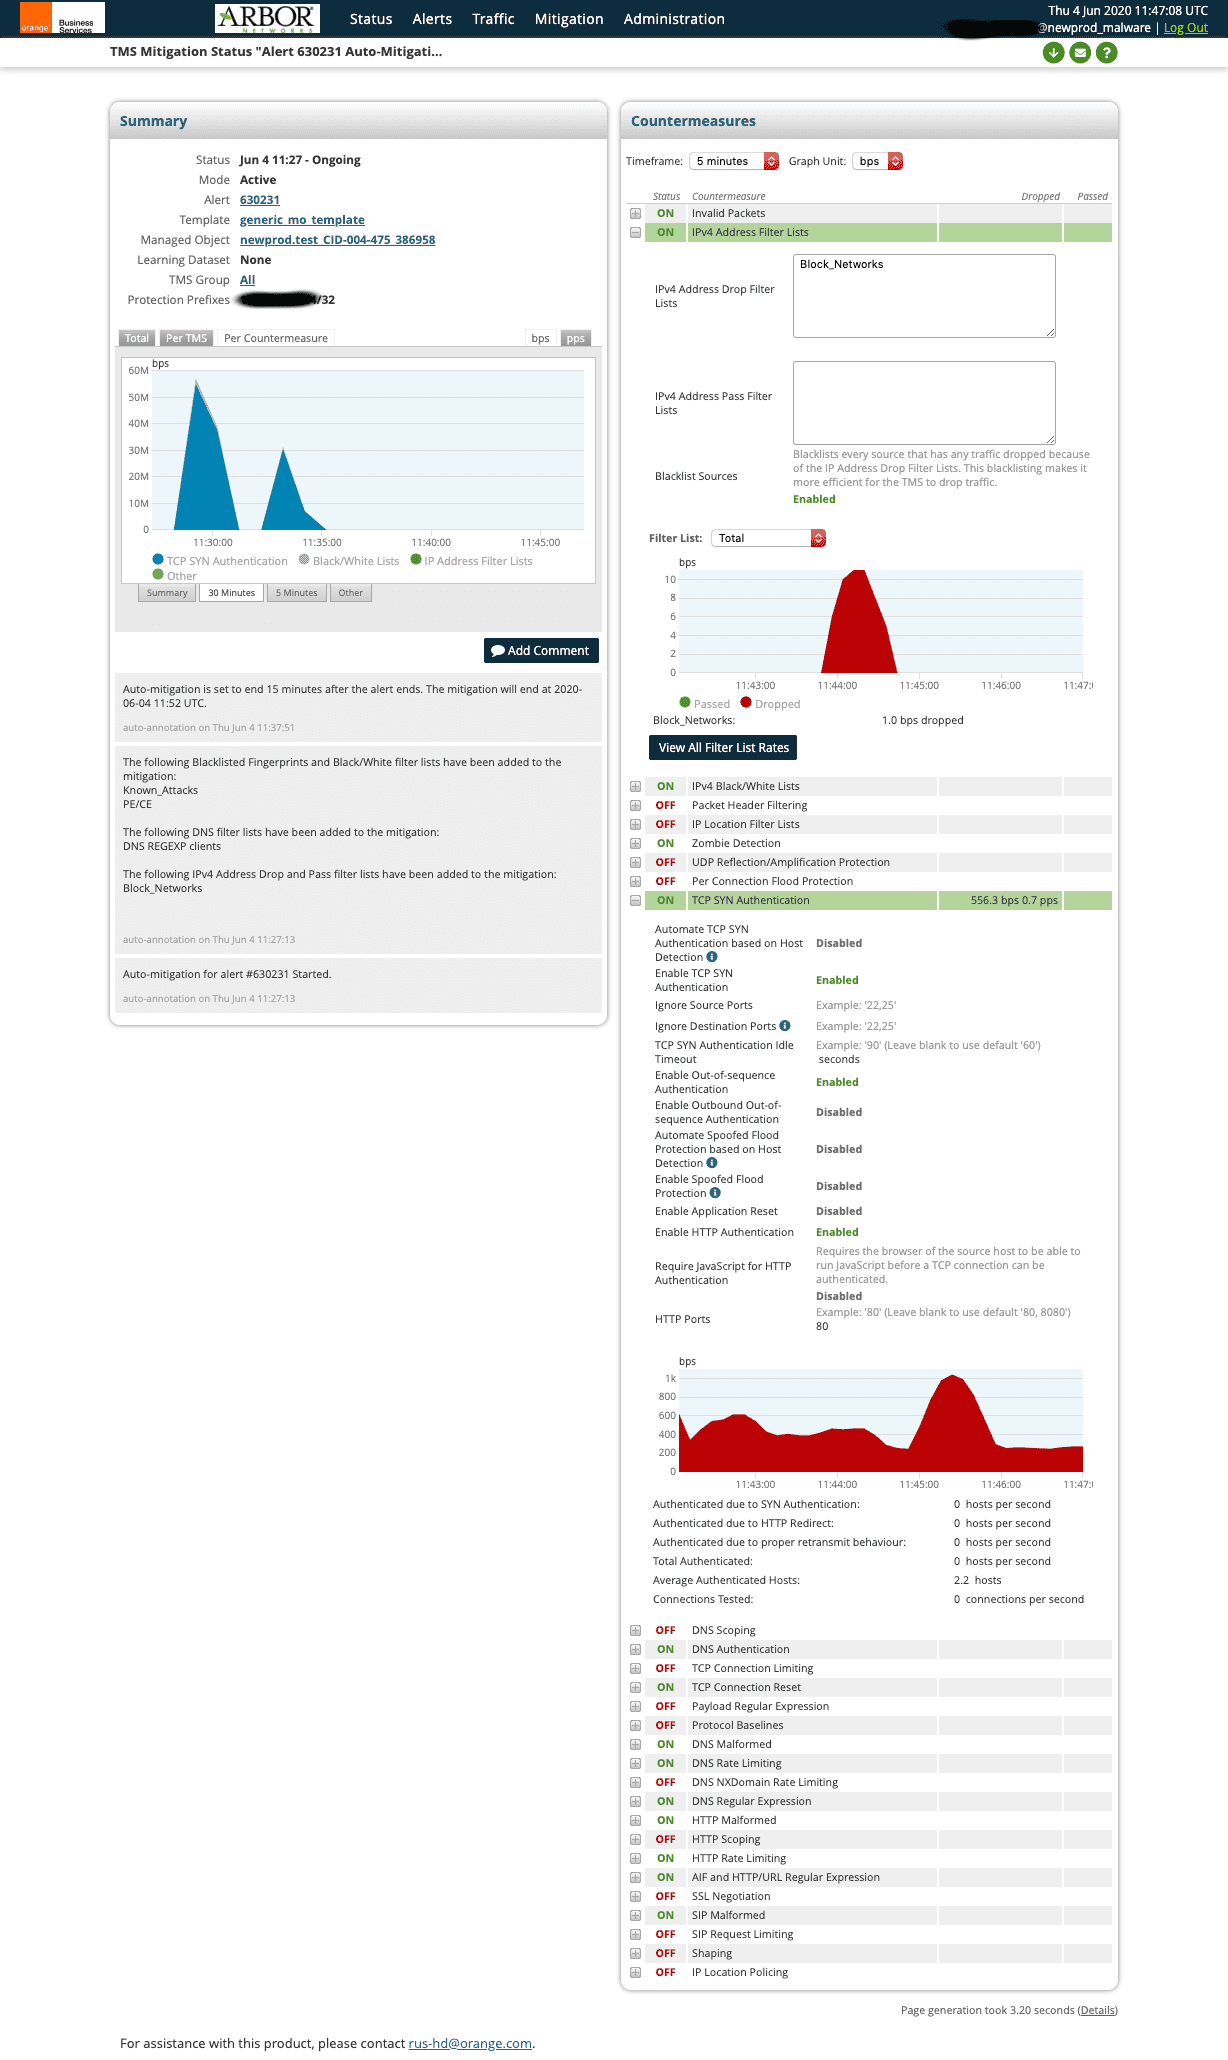 Окно с принятыми мерами по смягчению и ликвидации DDoS-атаки (ID 630231) в Orange Internet Umbrella